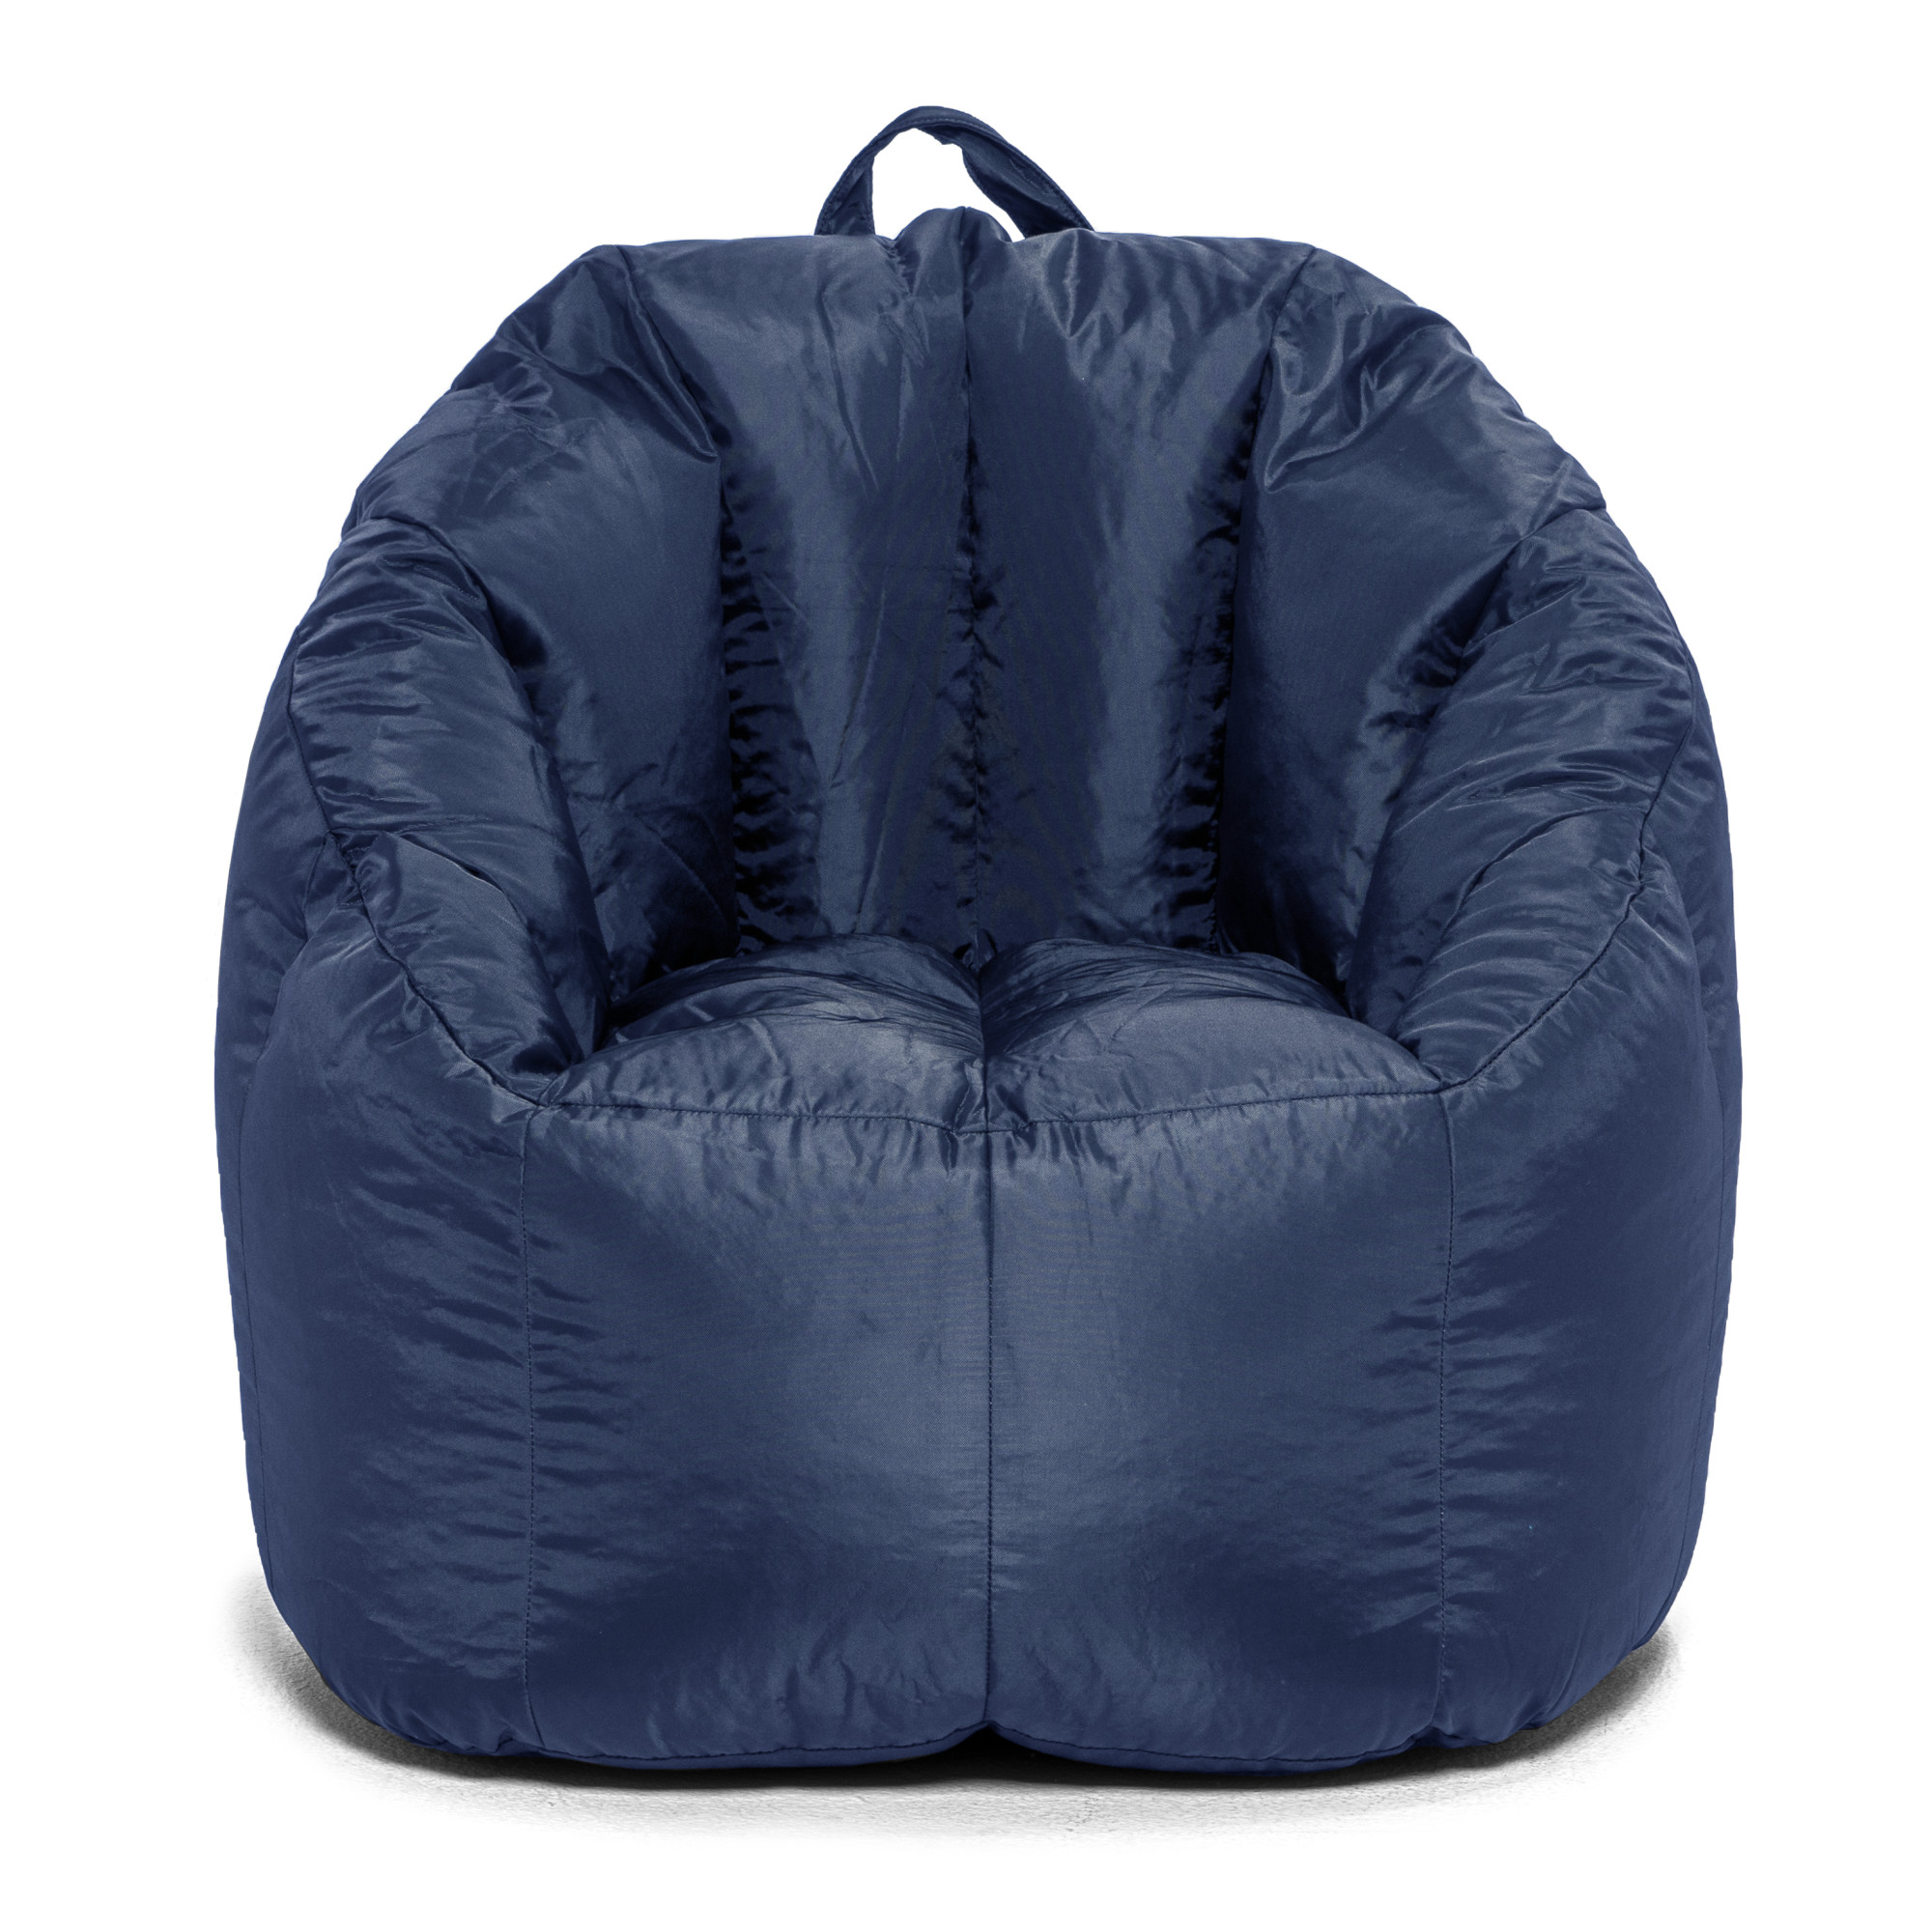 Big Joe Joey Bean Bag Chair, Smartmax, Kids/Teens, 2.5ft, Navy - image 1 of 8